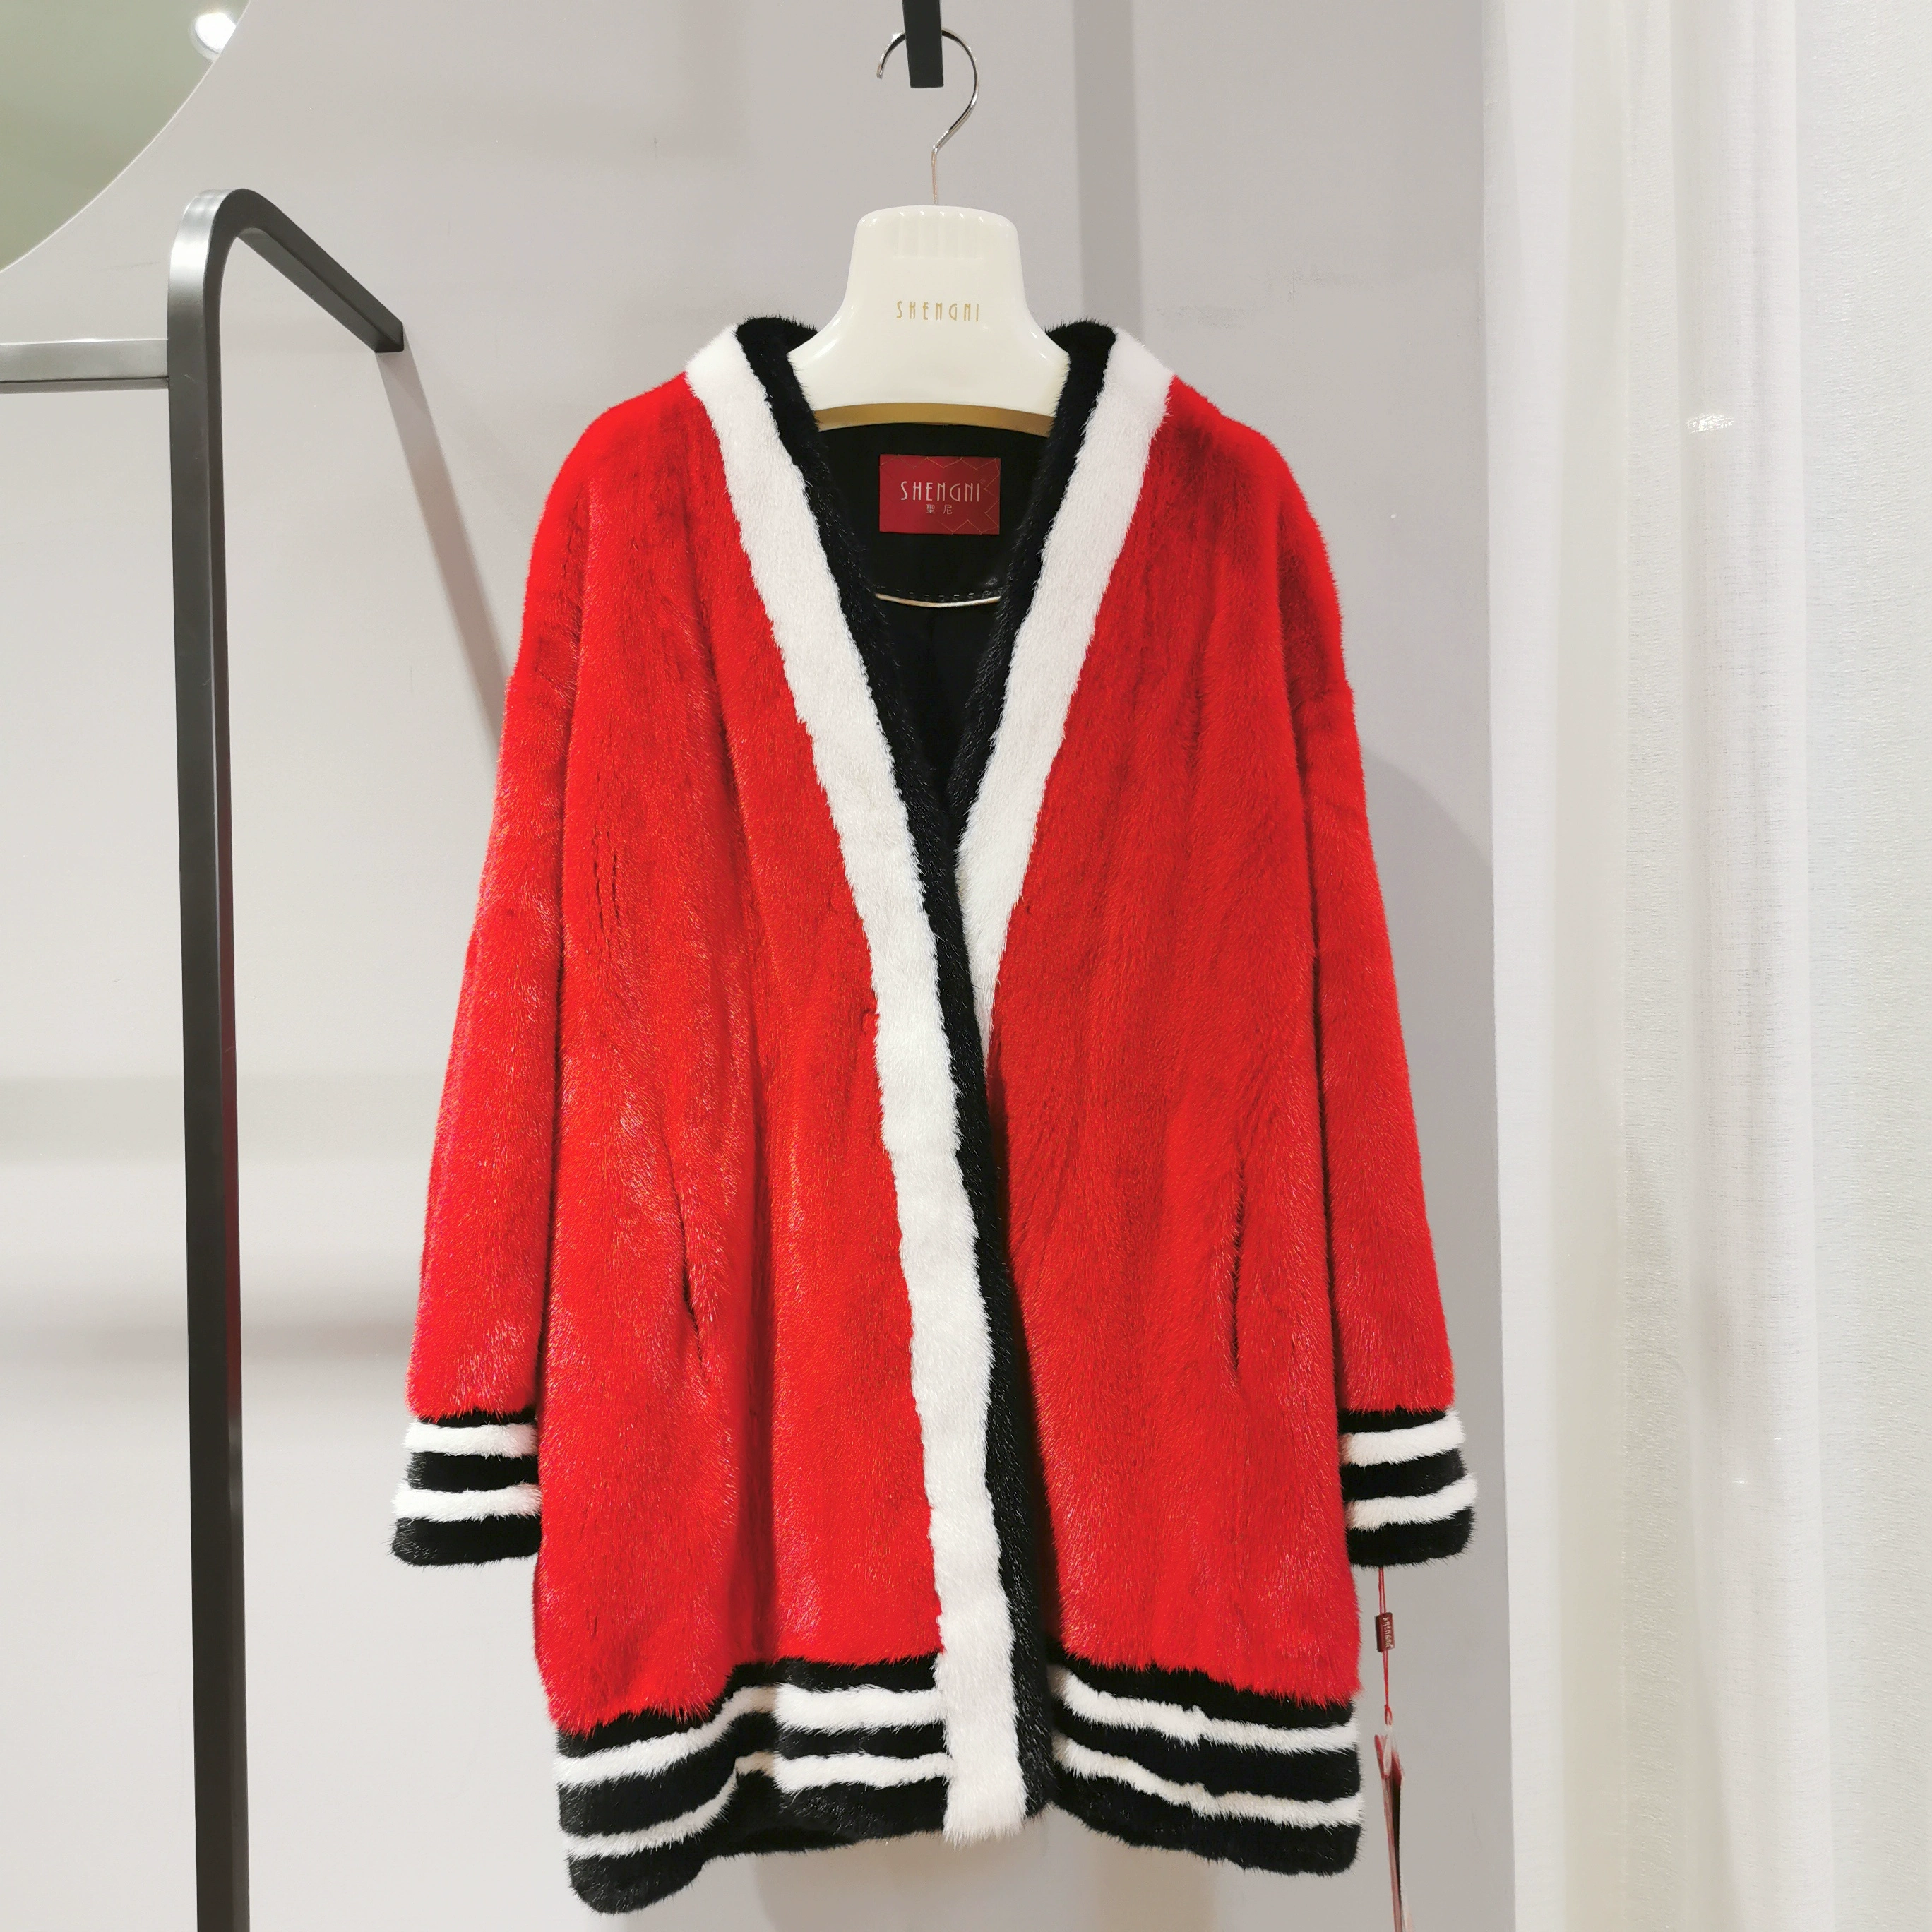 Double C ít hương thơm, quý cô quý phái, áo khoác lông màu đỏ tươi và đỏ rực và mùa xuân - Faux Fur